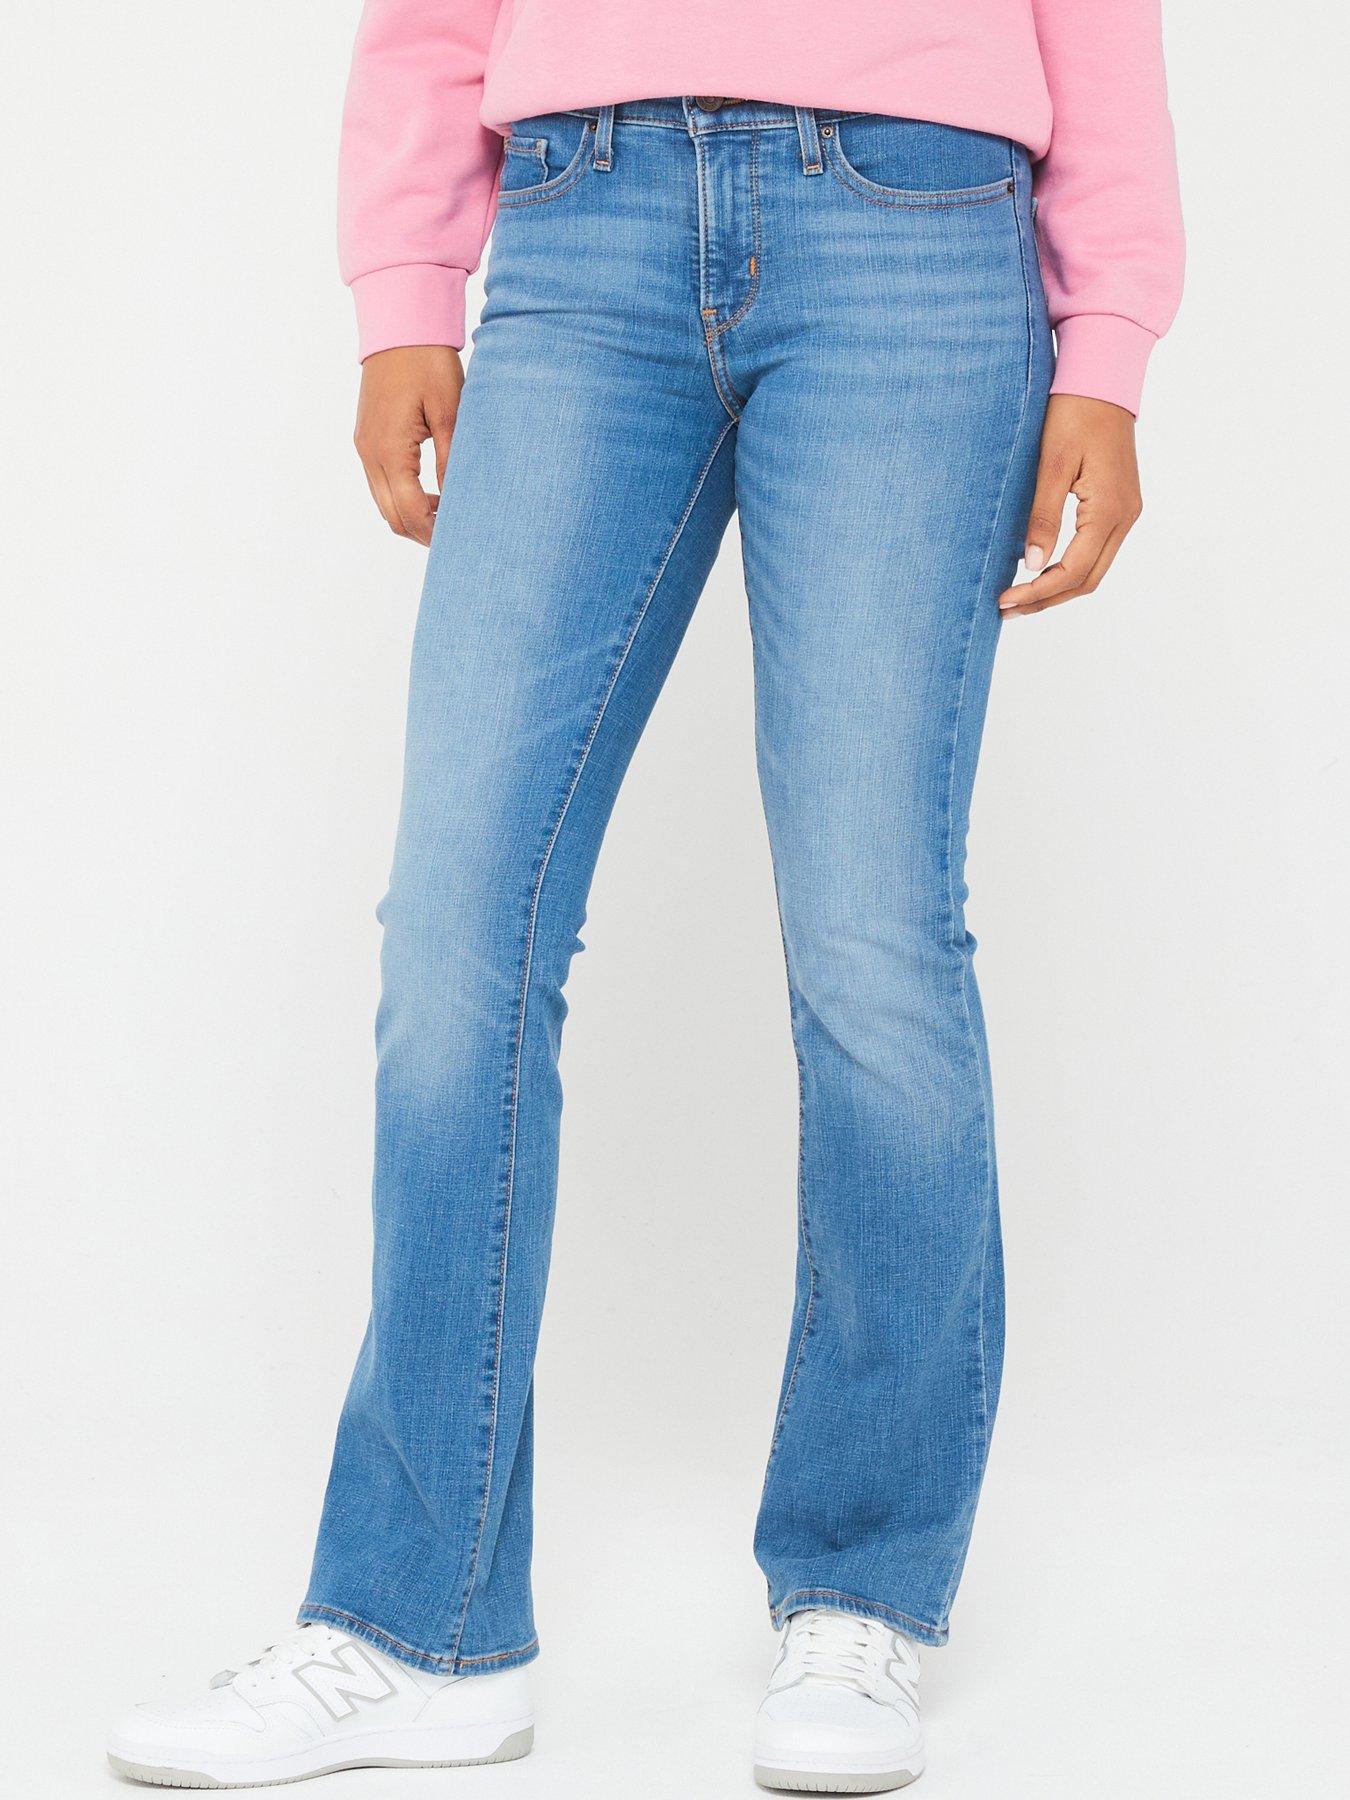 Levi's Women's Denim Jeans, 501 Ladies Jeans